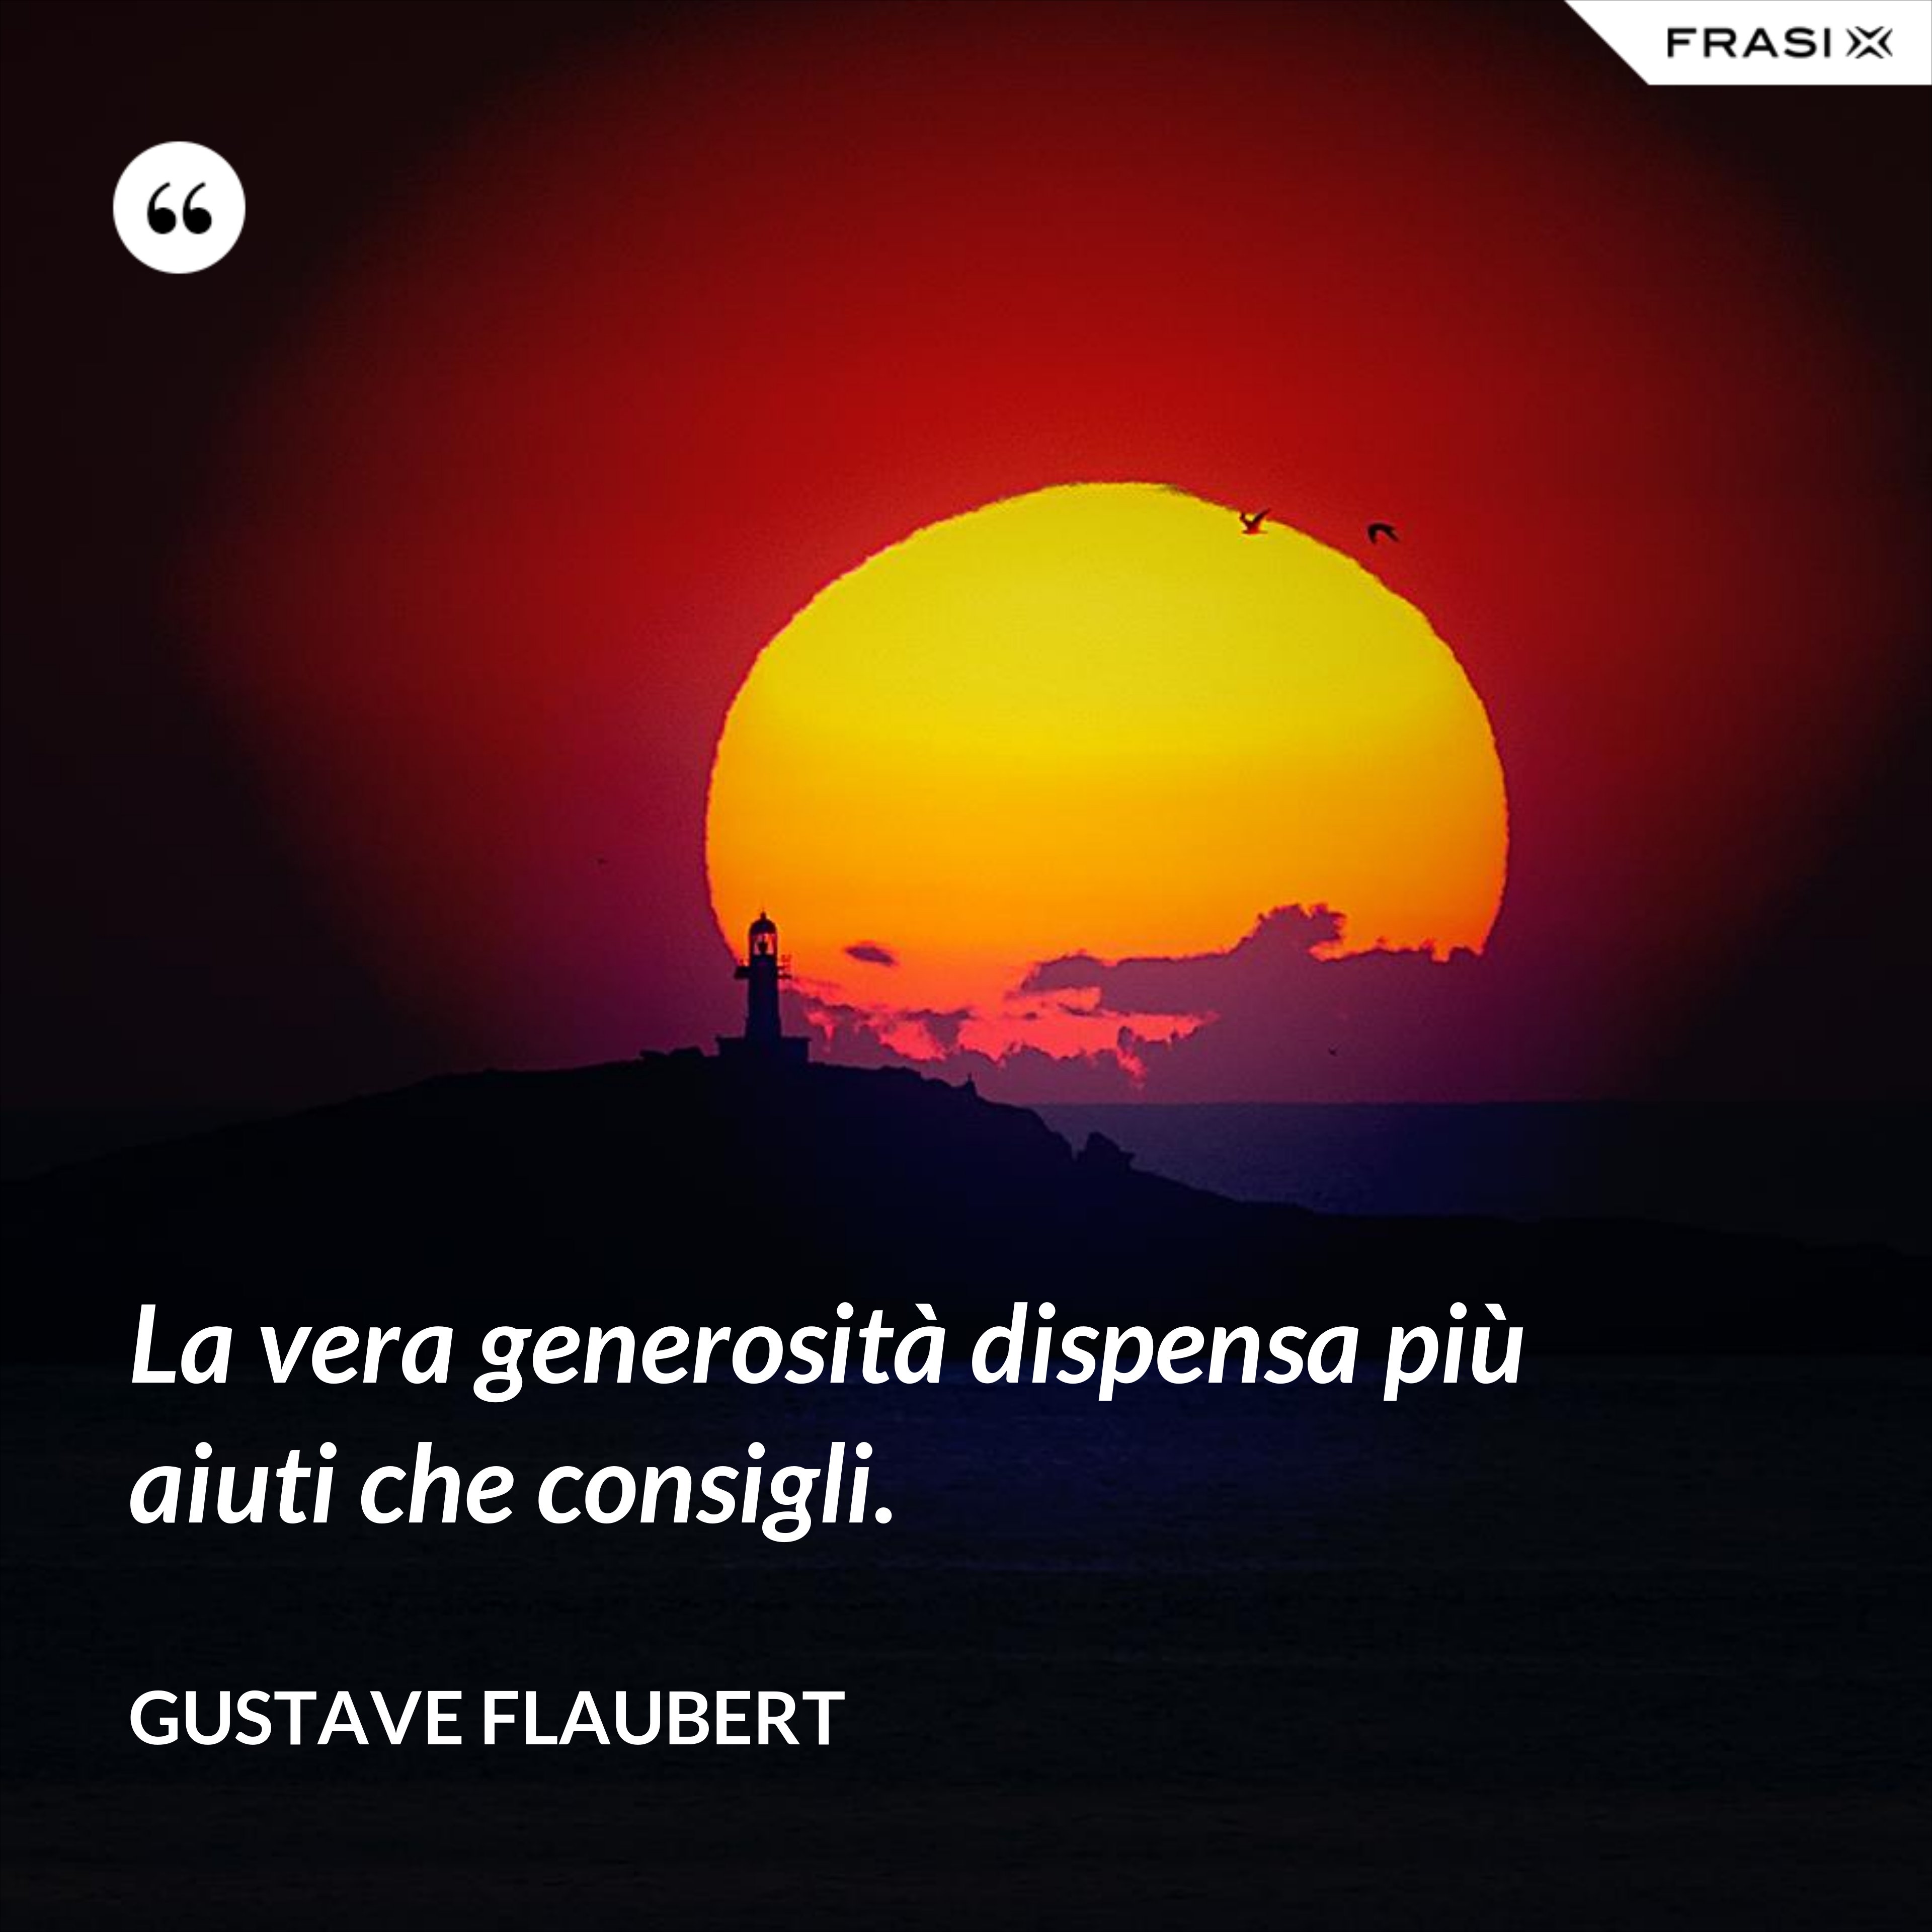 La vera generosità dispensa più aiuti che consigli. - Gustave Flaubert